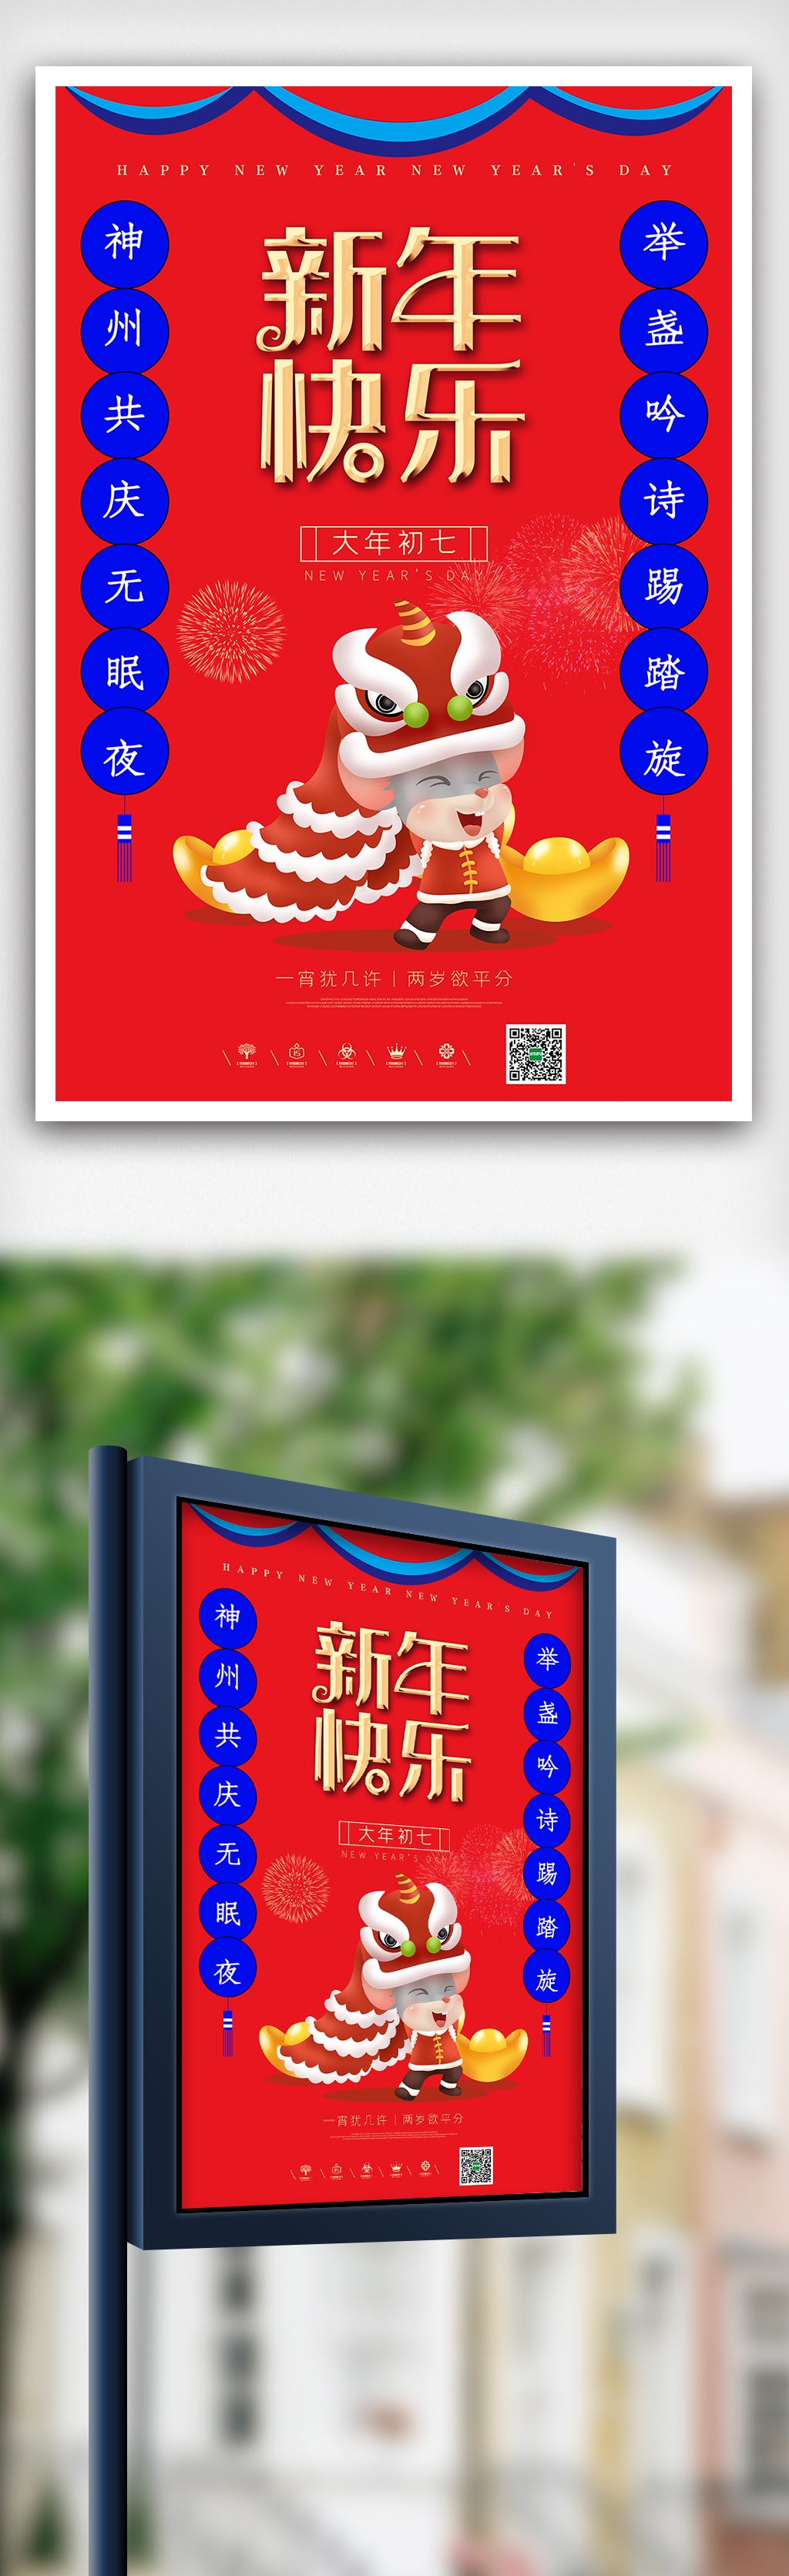 红色喜庆风格鼠年初七海报设计图片